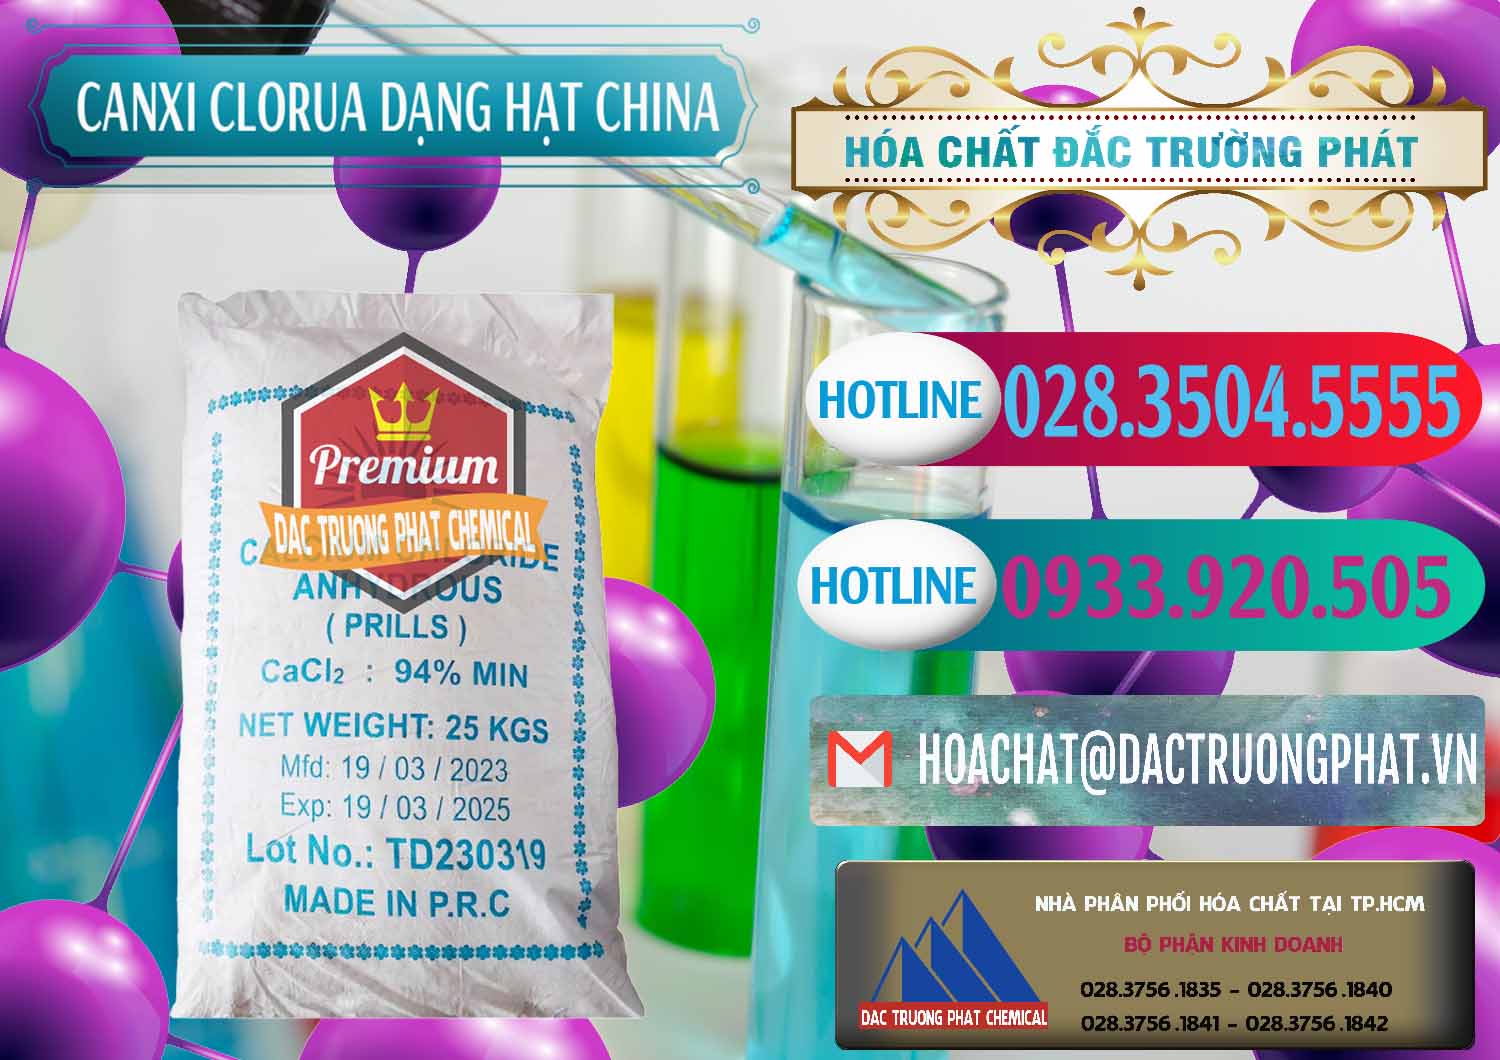 Nơi kinh doanh _ bán CaCl2 – Canxi Clorua 94% Dạng Hạt Trung Quốc China - 0373 - Chuyên bán và cung cấp hóa chất tại TP.HCM - truongphat.vn